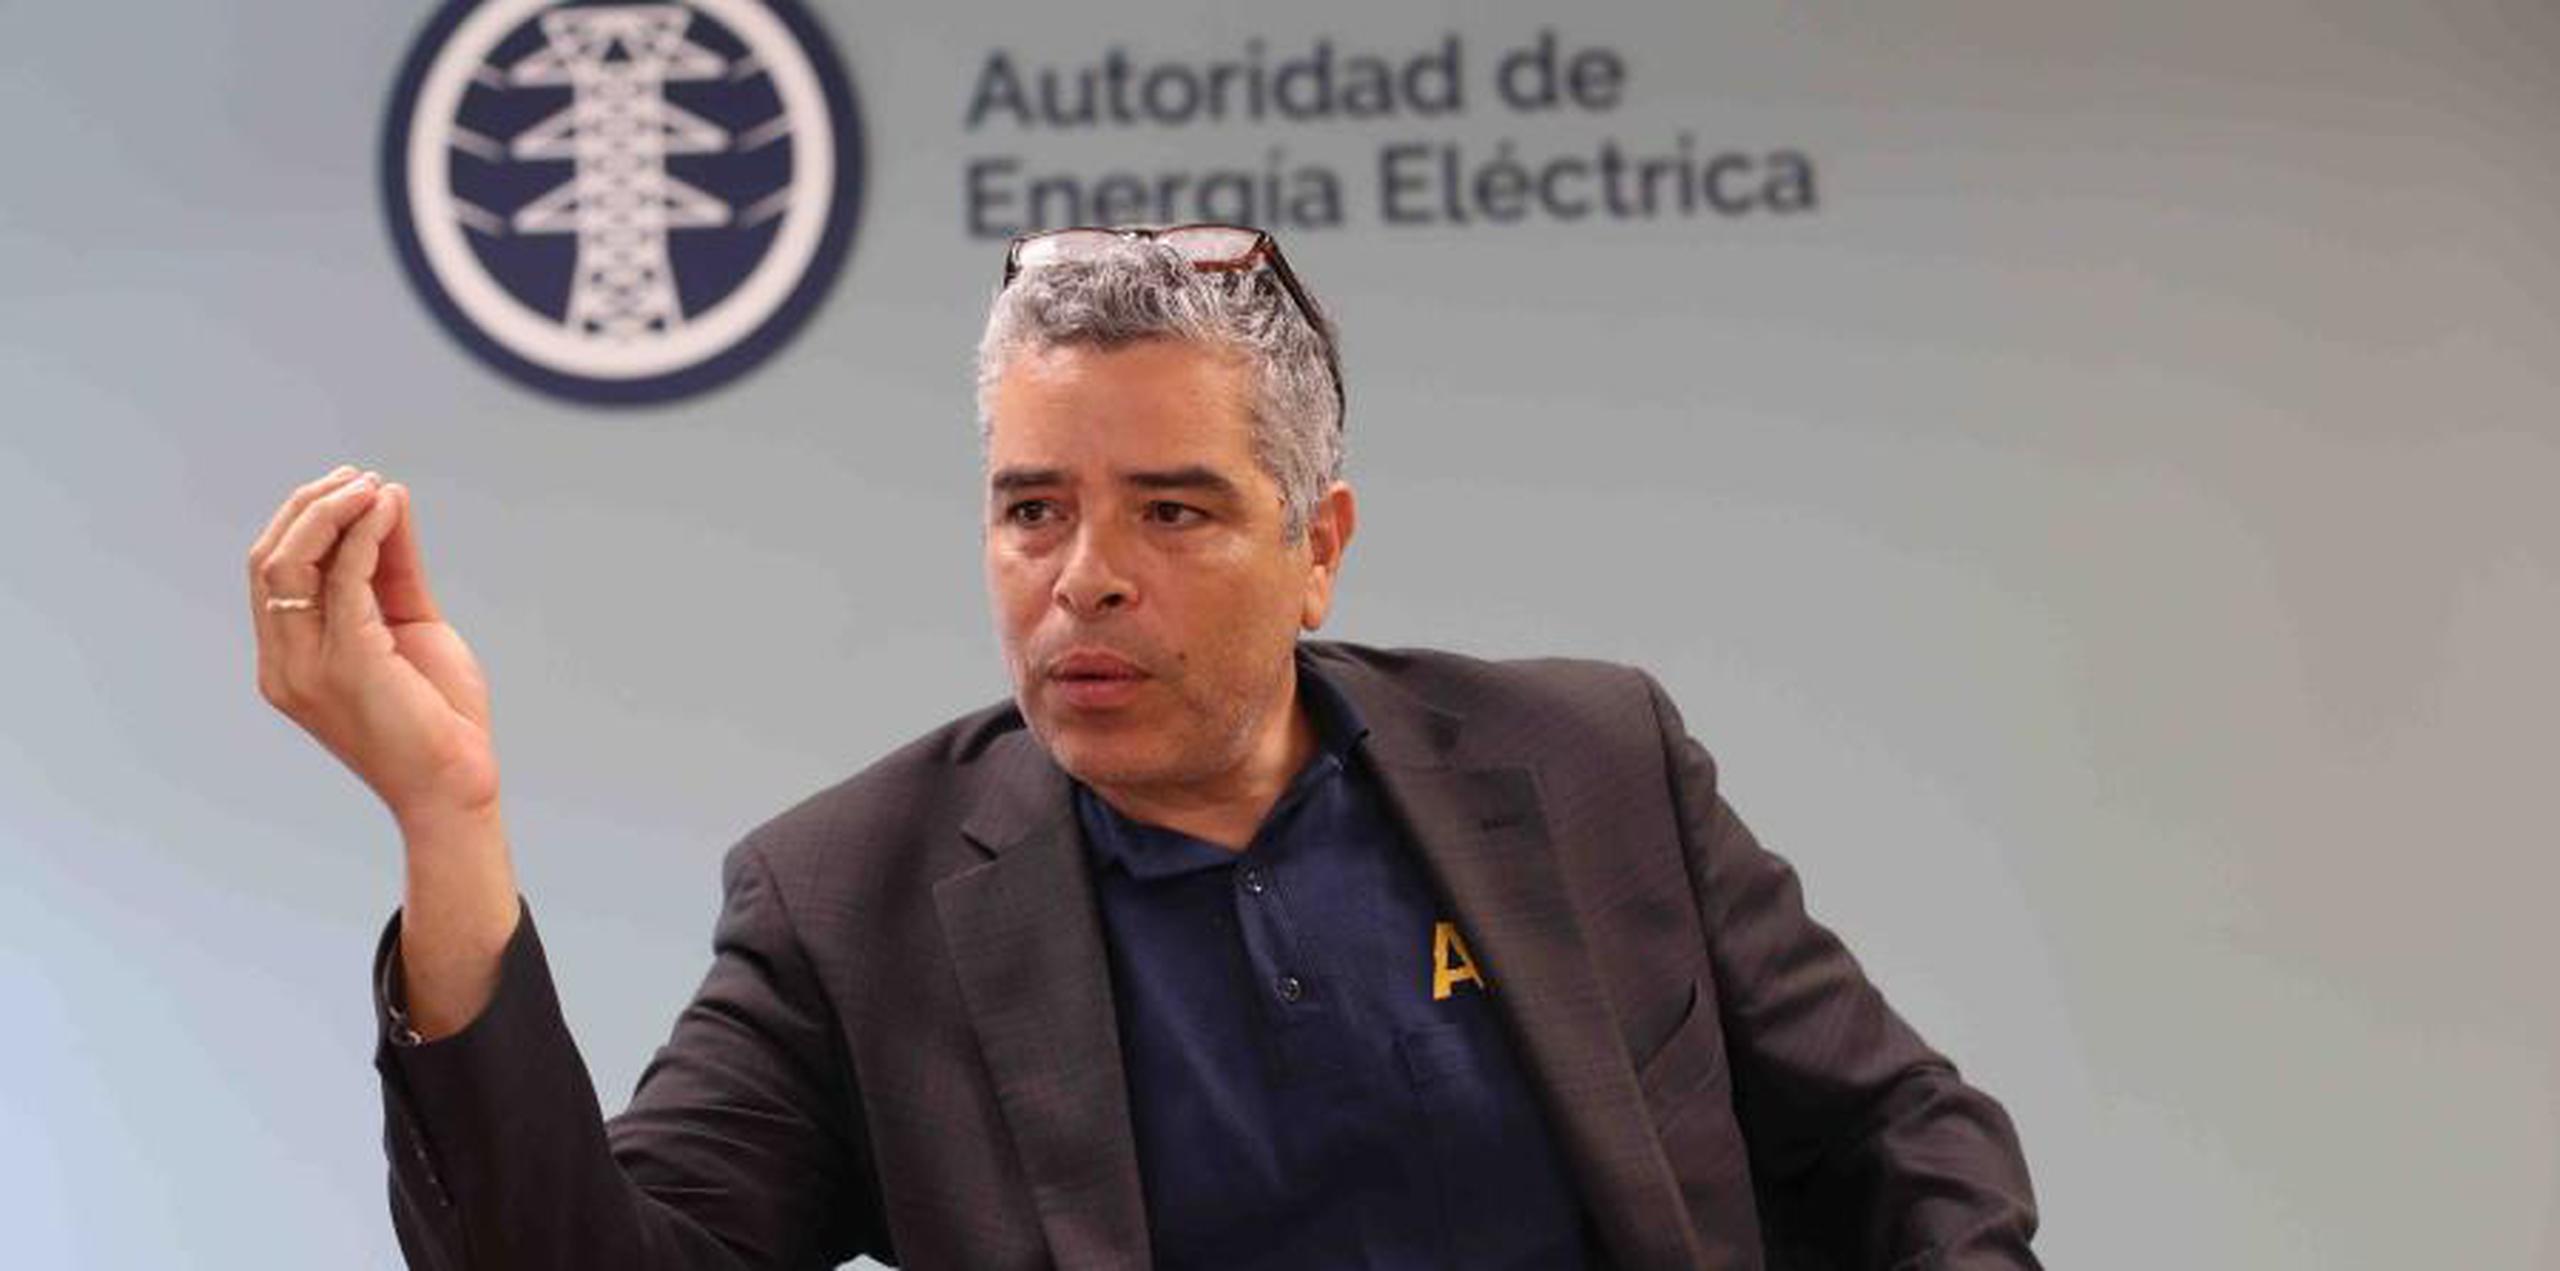 El director de la AEE, Ricardo Ramos, ha dicho que necesita de $750 millones adicionales para hacer la reparación total del sistema energético, lo que se estima en $1,300 millones. (Archivo)